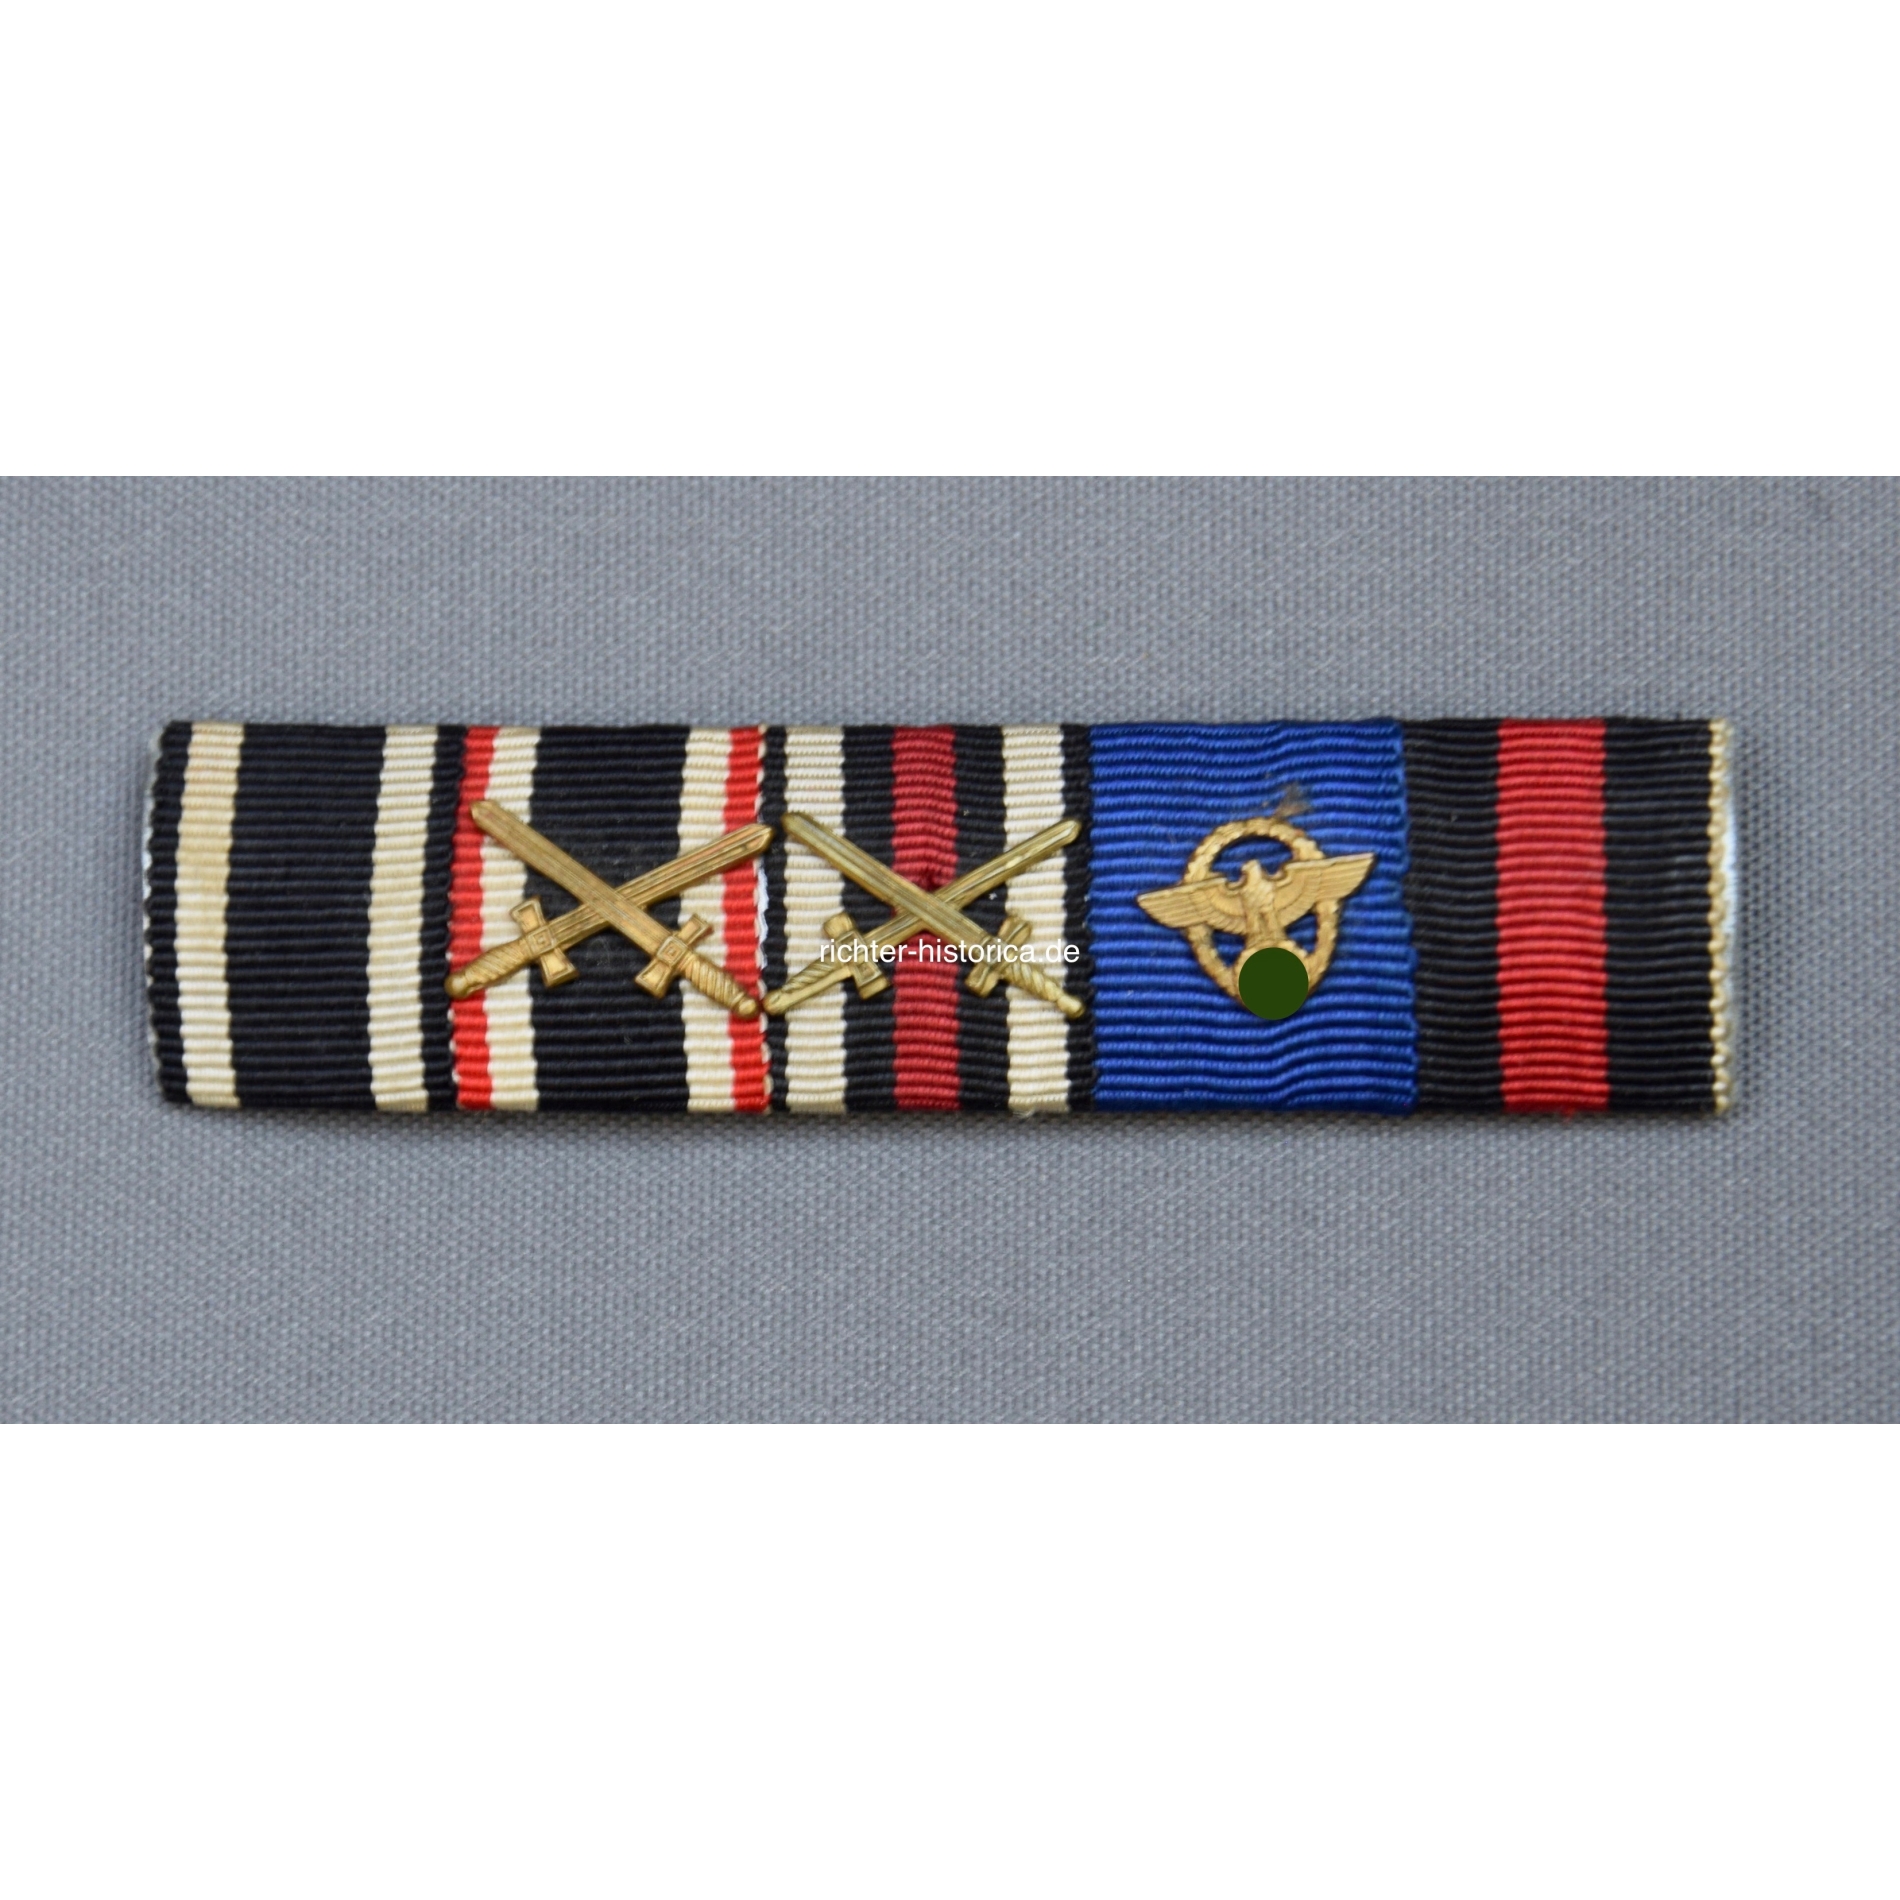 Miniatur Bandsapnge eines Polizisten der Wehrmacht